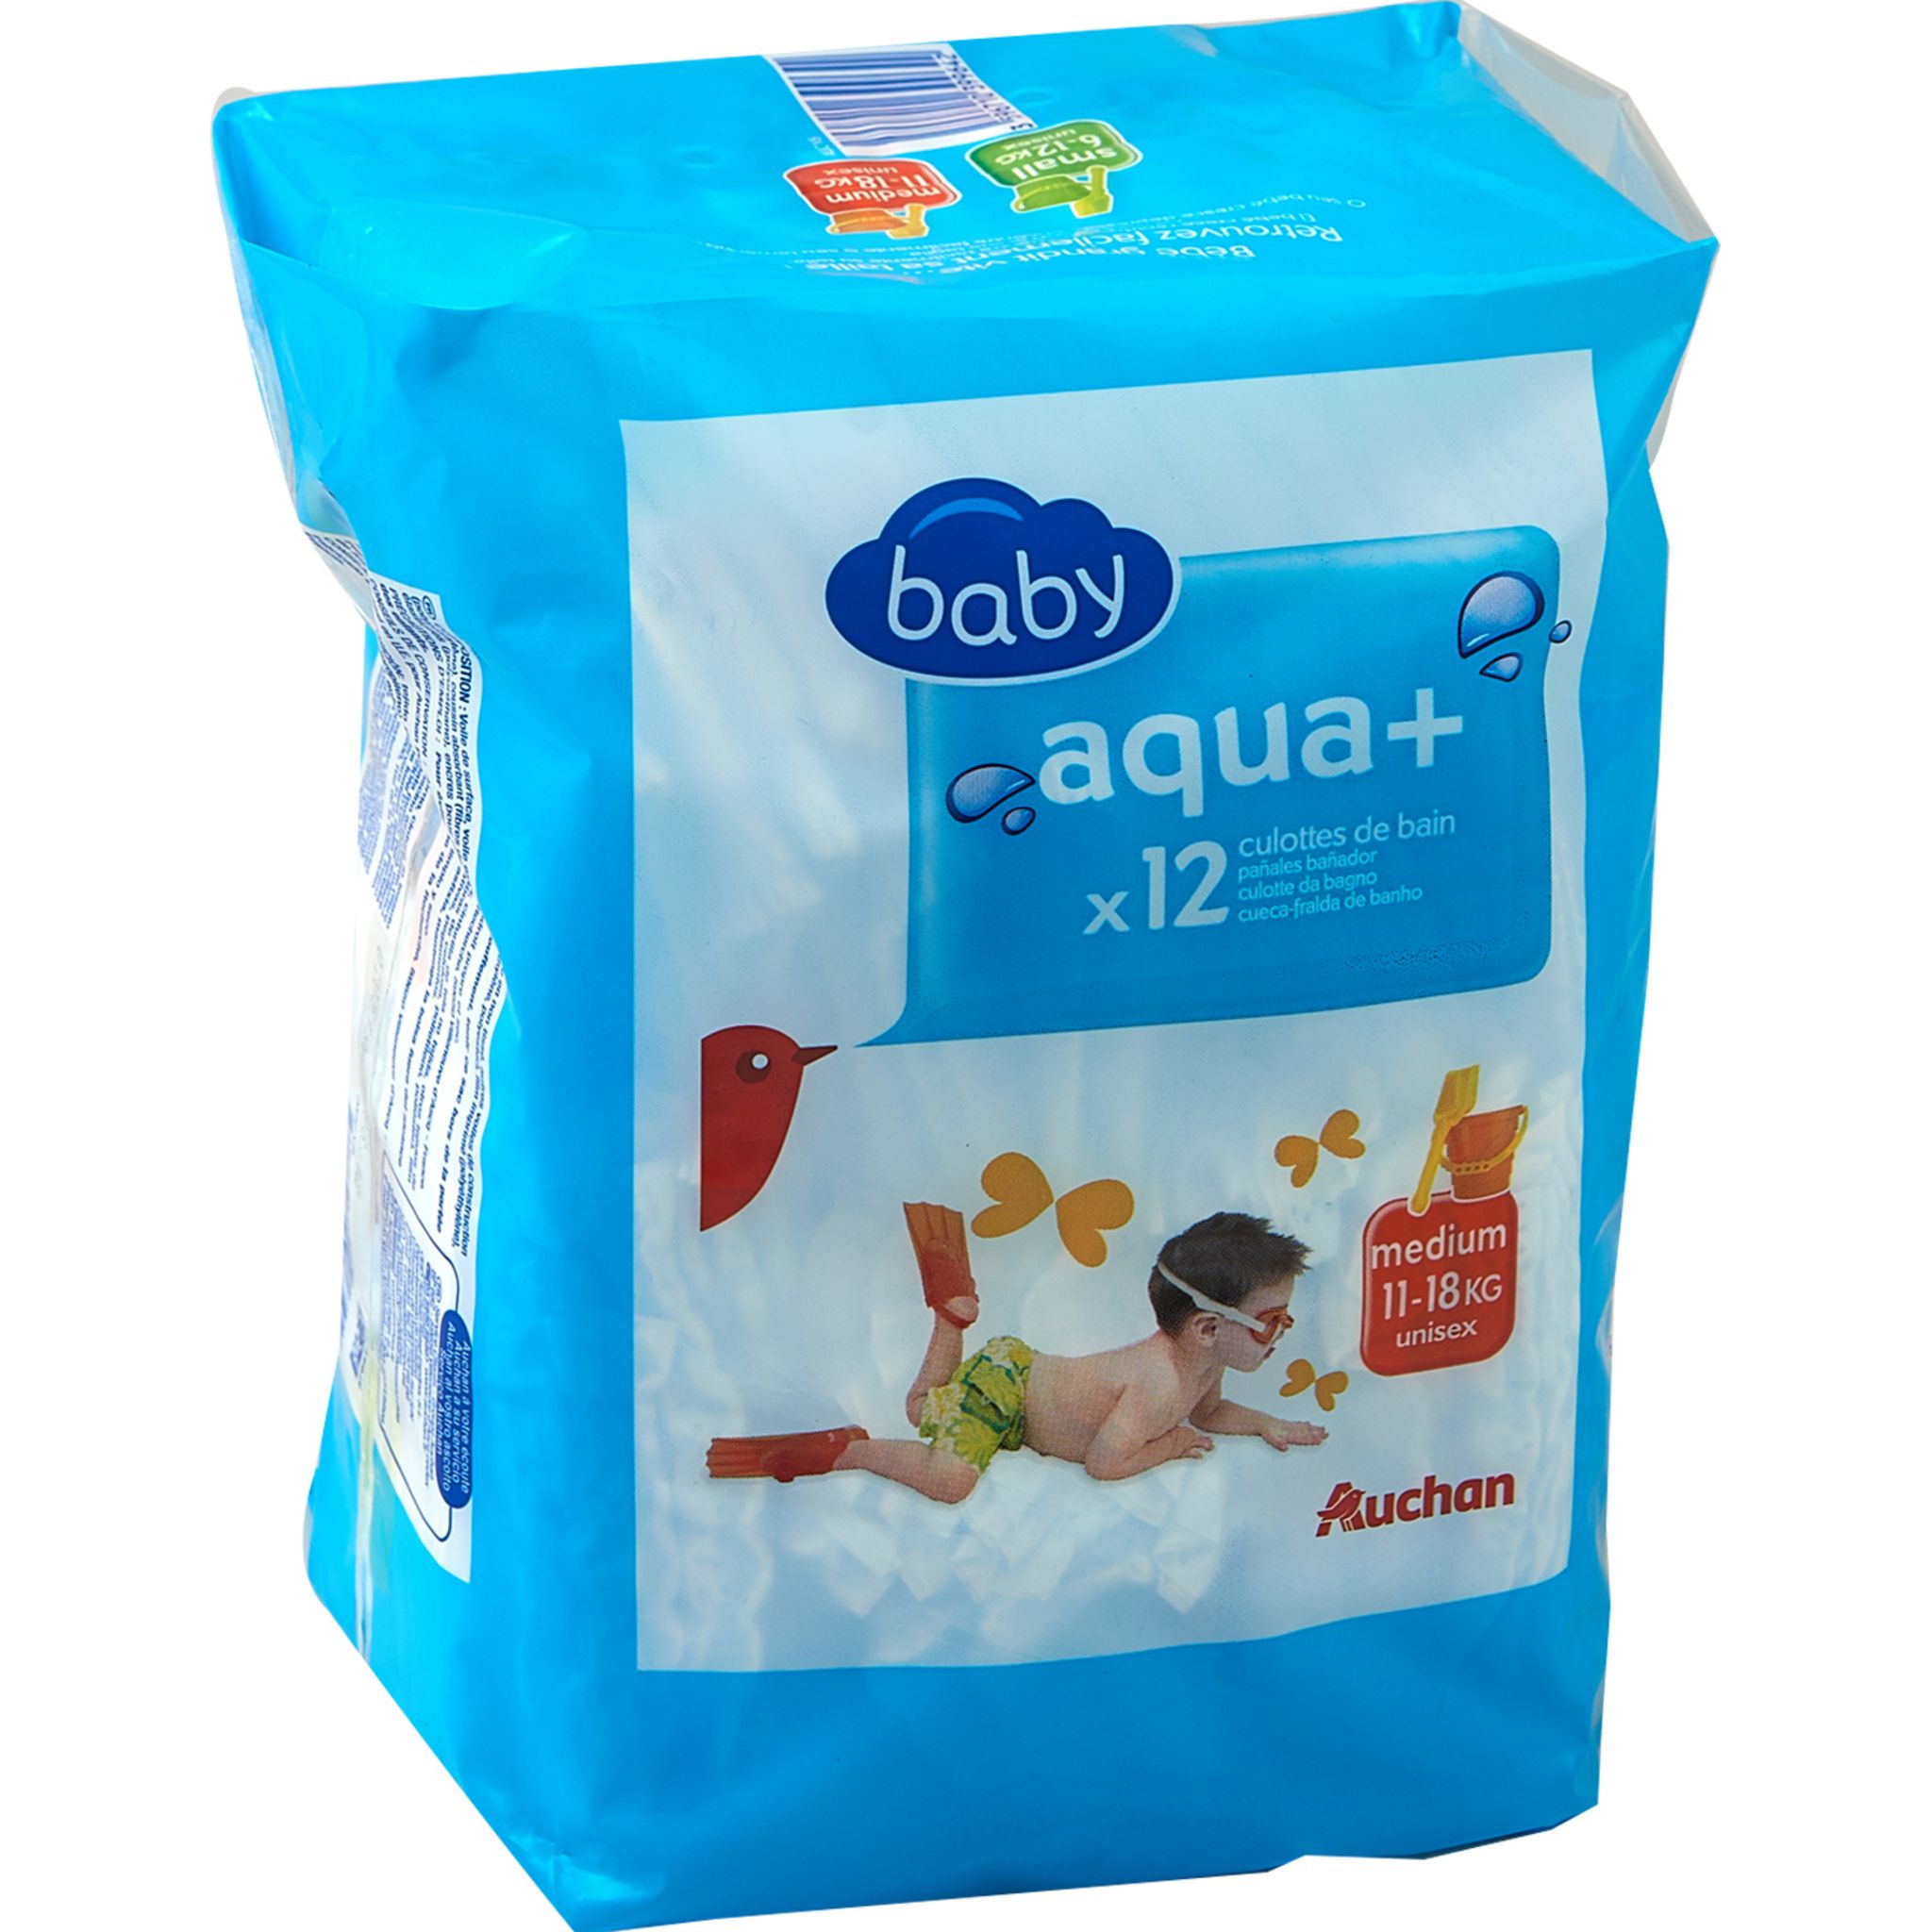 AUCHAN BABY Aqua + couches-culottes de bain taille M (11-18kg) 12 couches  pas cher 